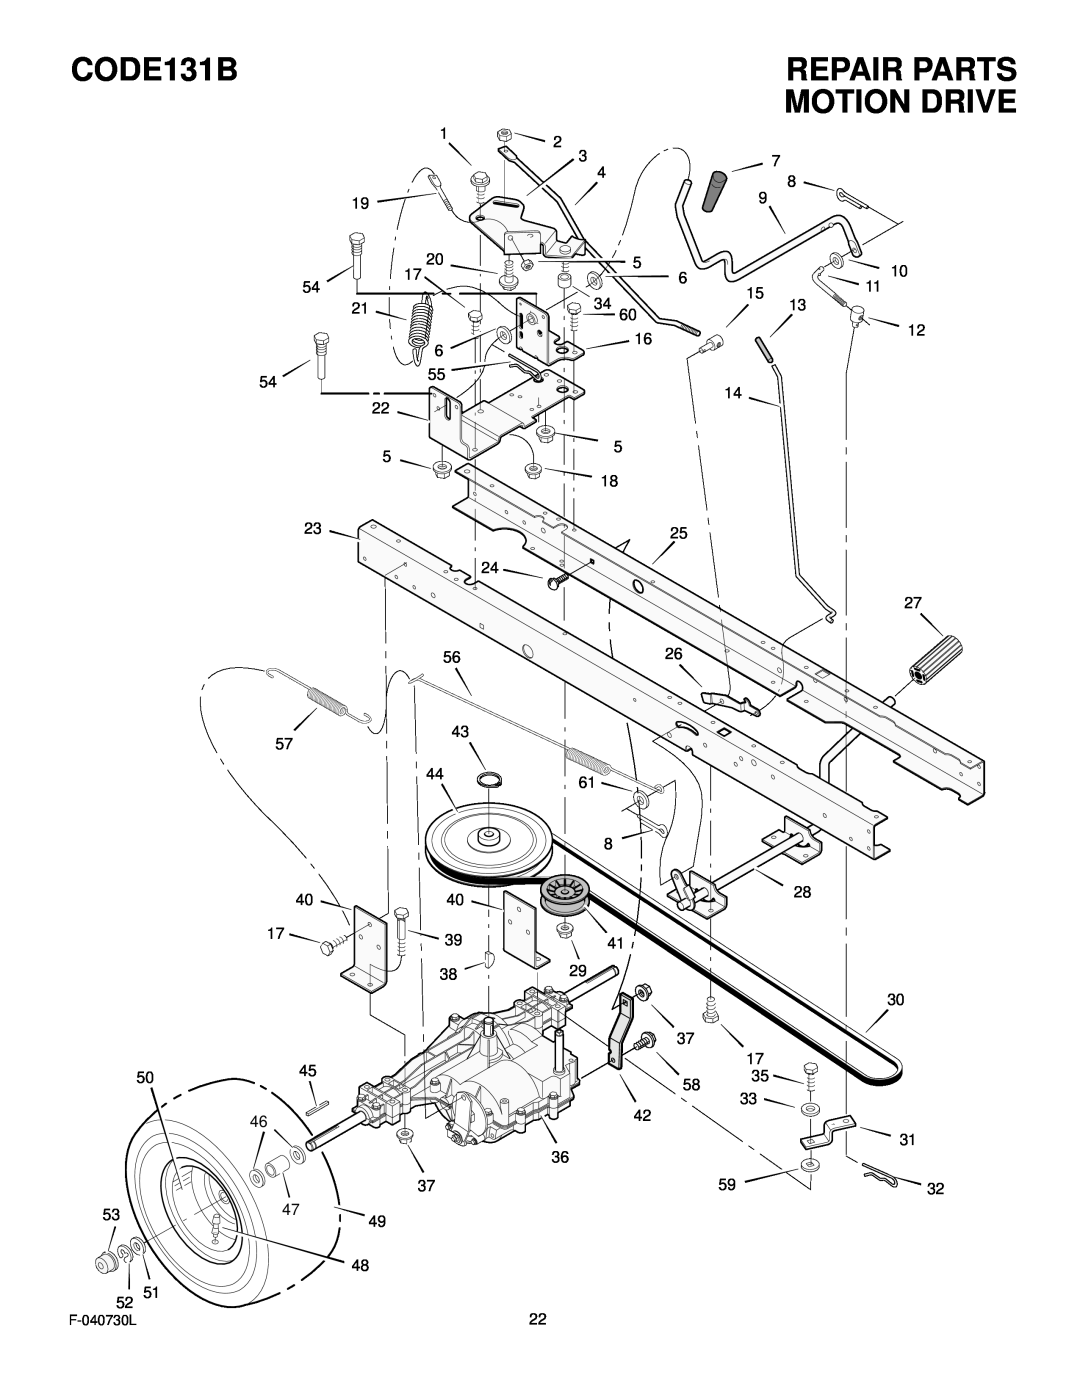 Hayter Mowers manual Motion Drive, Repair Parts, CODE131B 